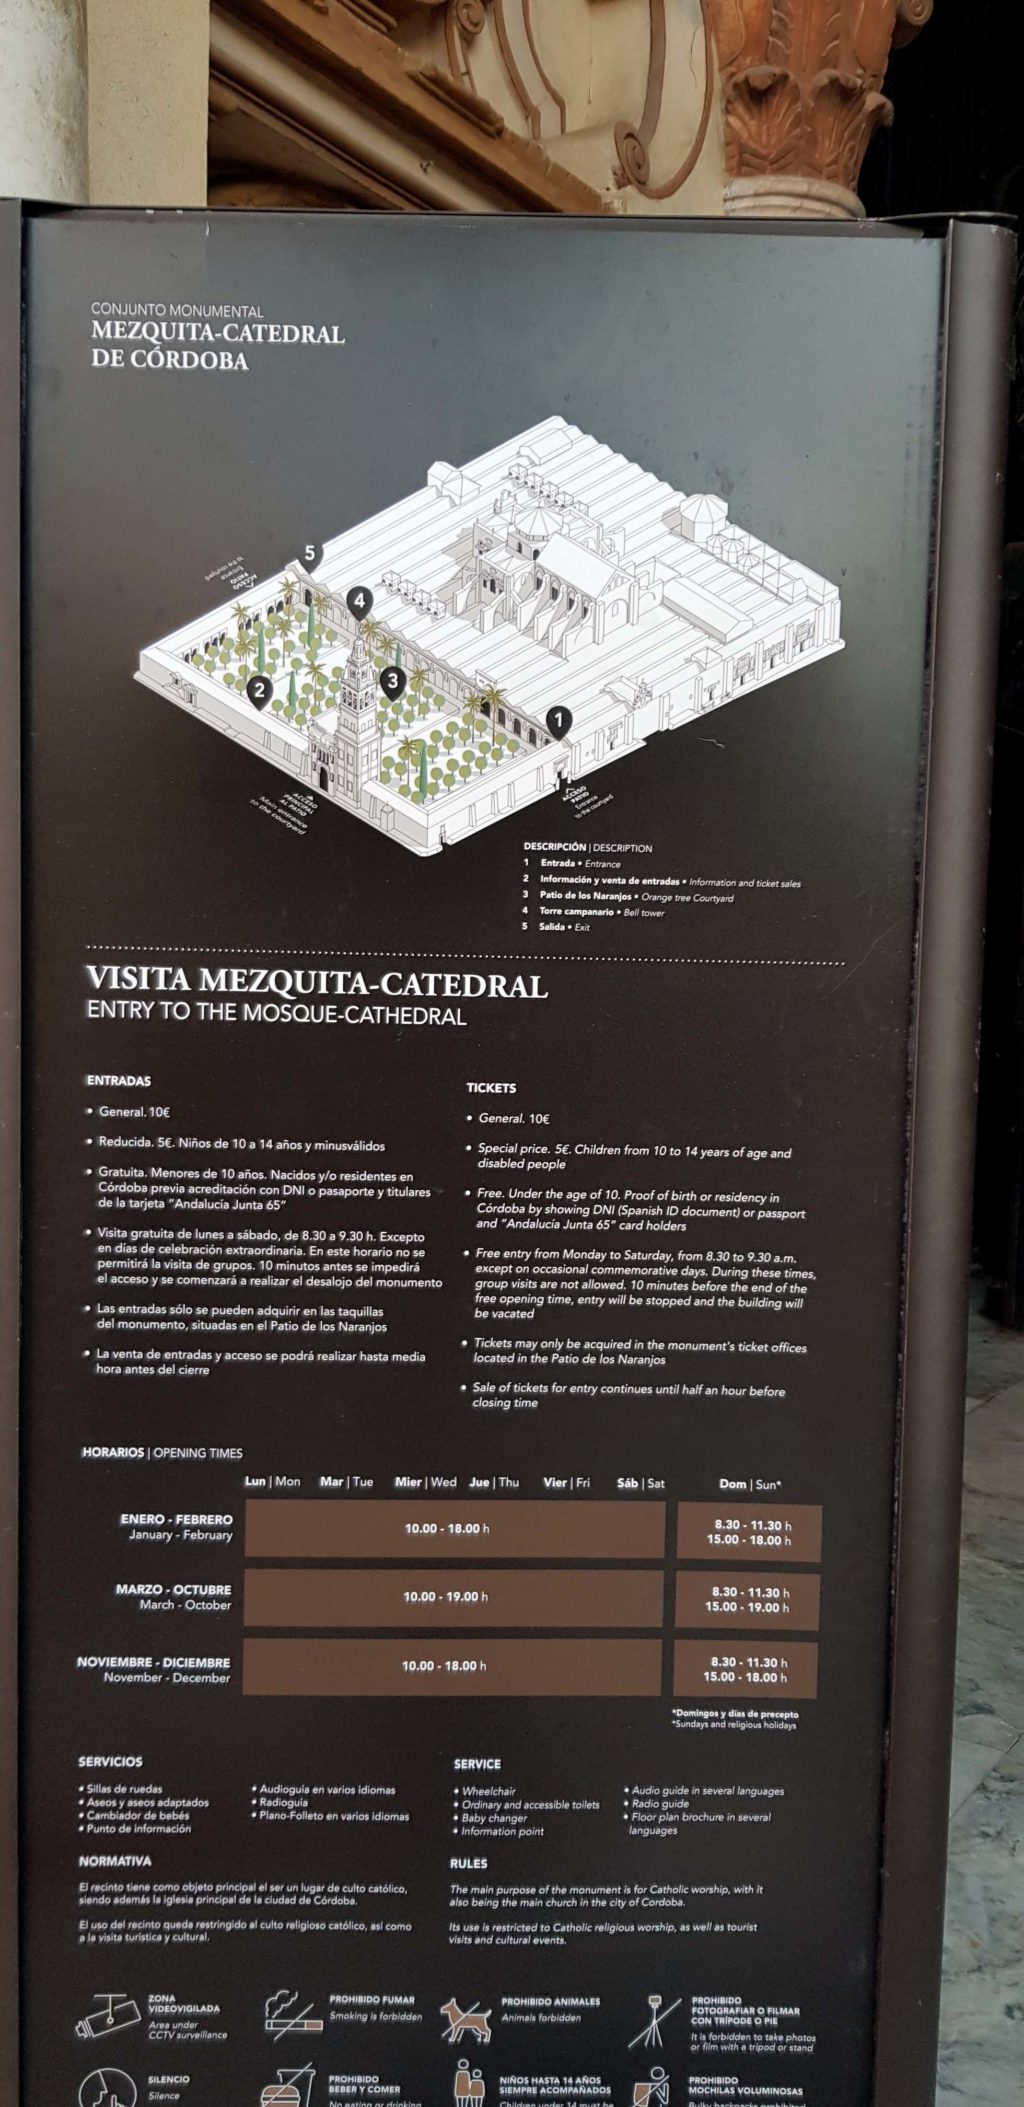 Plan der Mezquita-Catedral de Córdoba